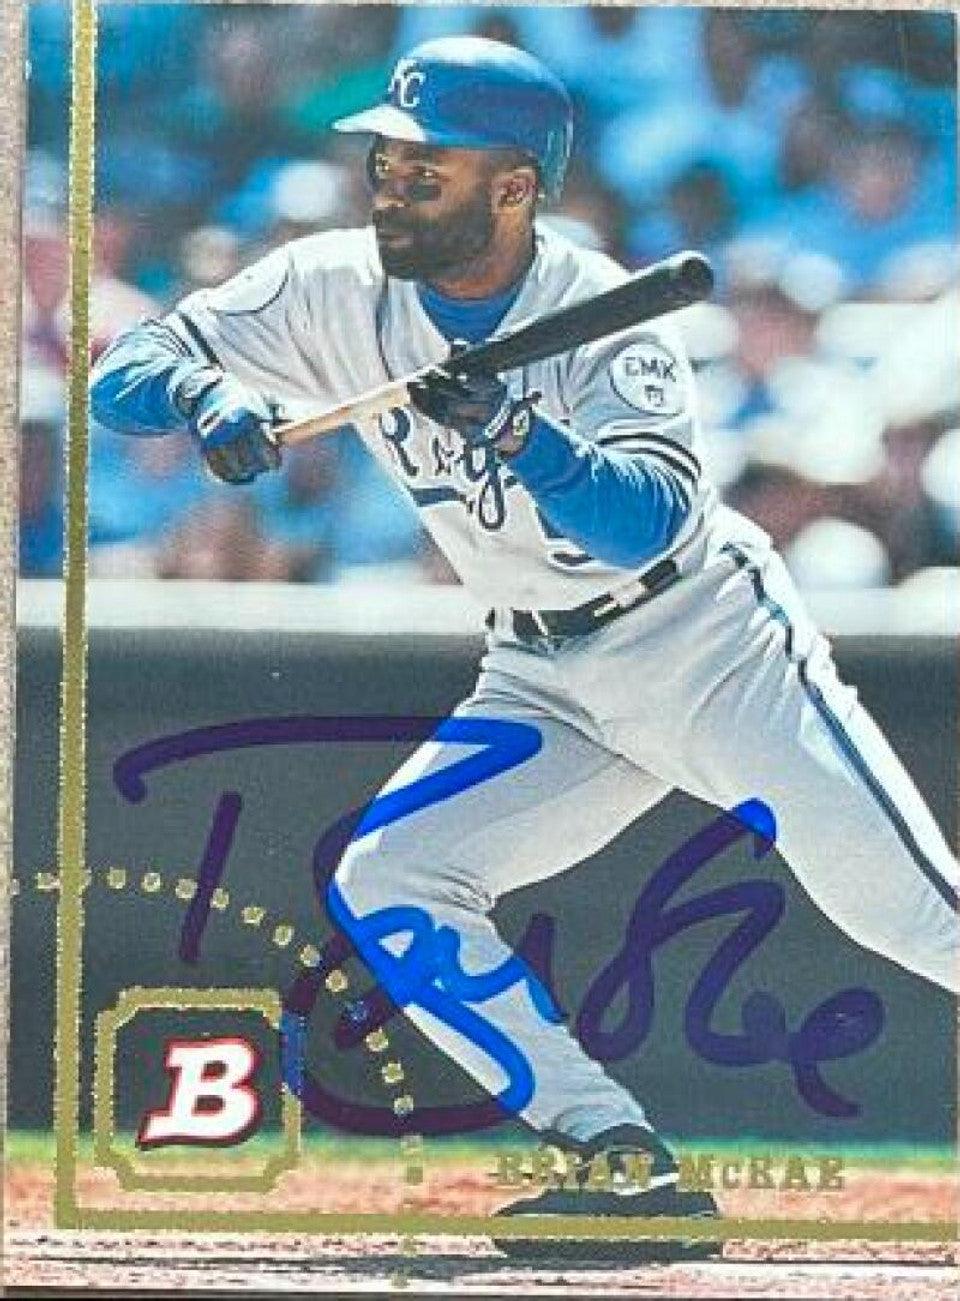 Brian McRae Signed 1994 Bowman Baseball Card - Kansas City Royals - PastPros